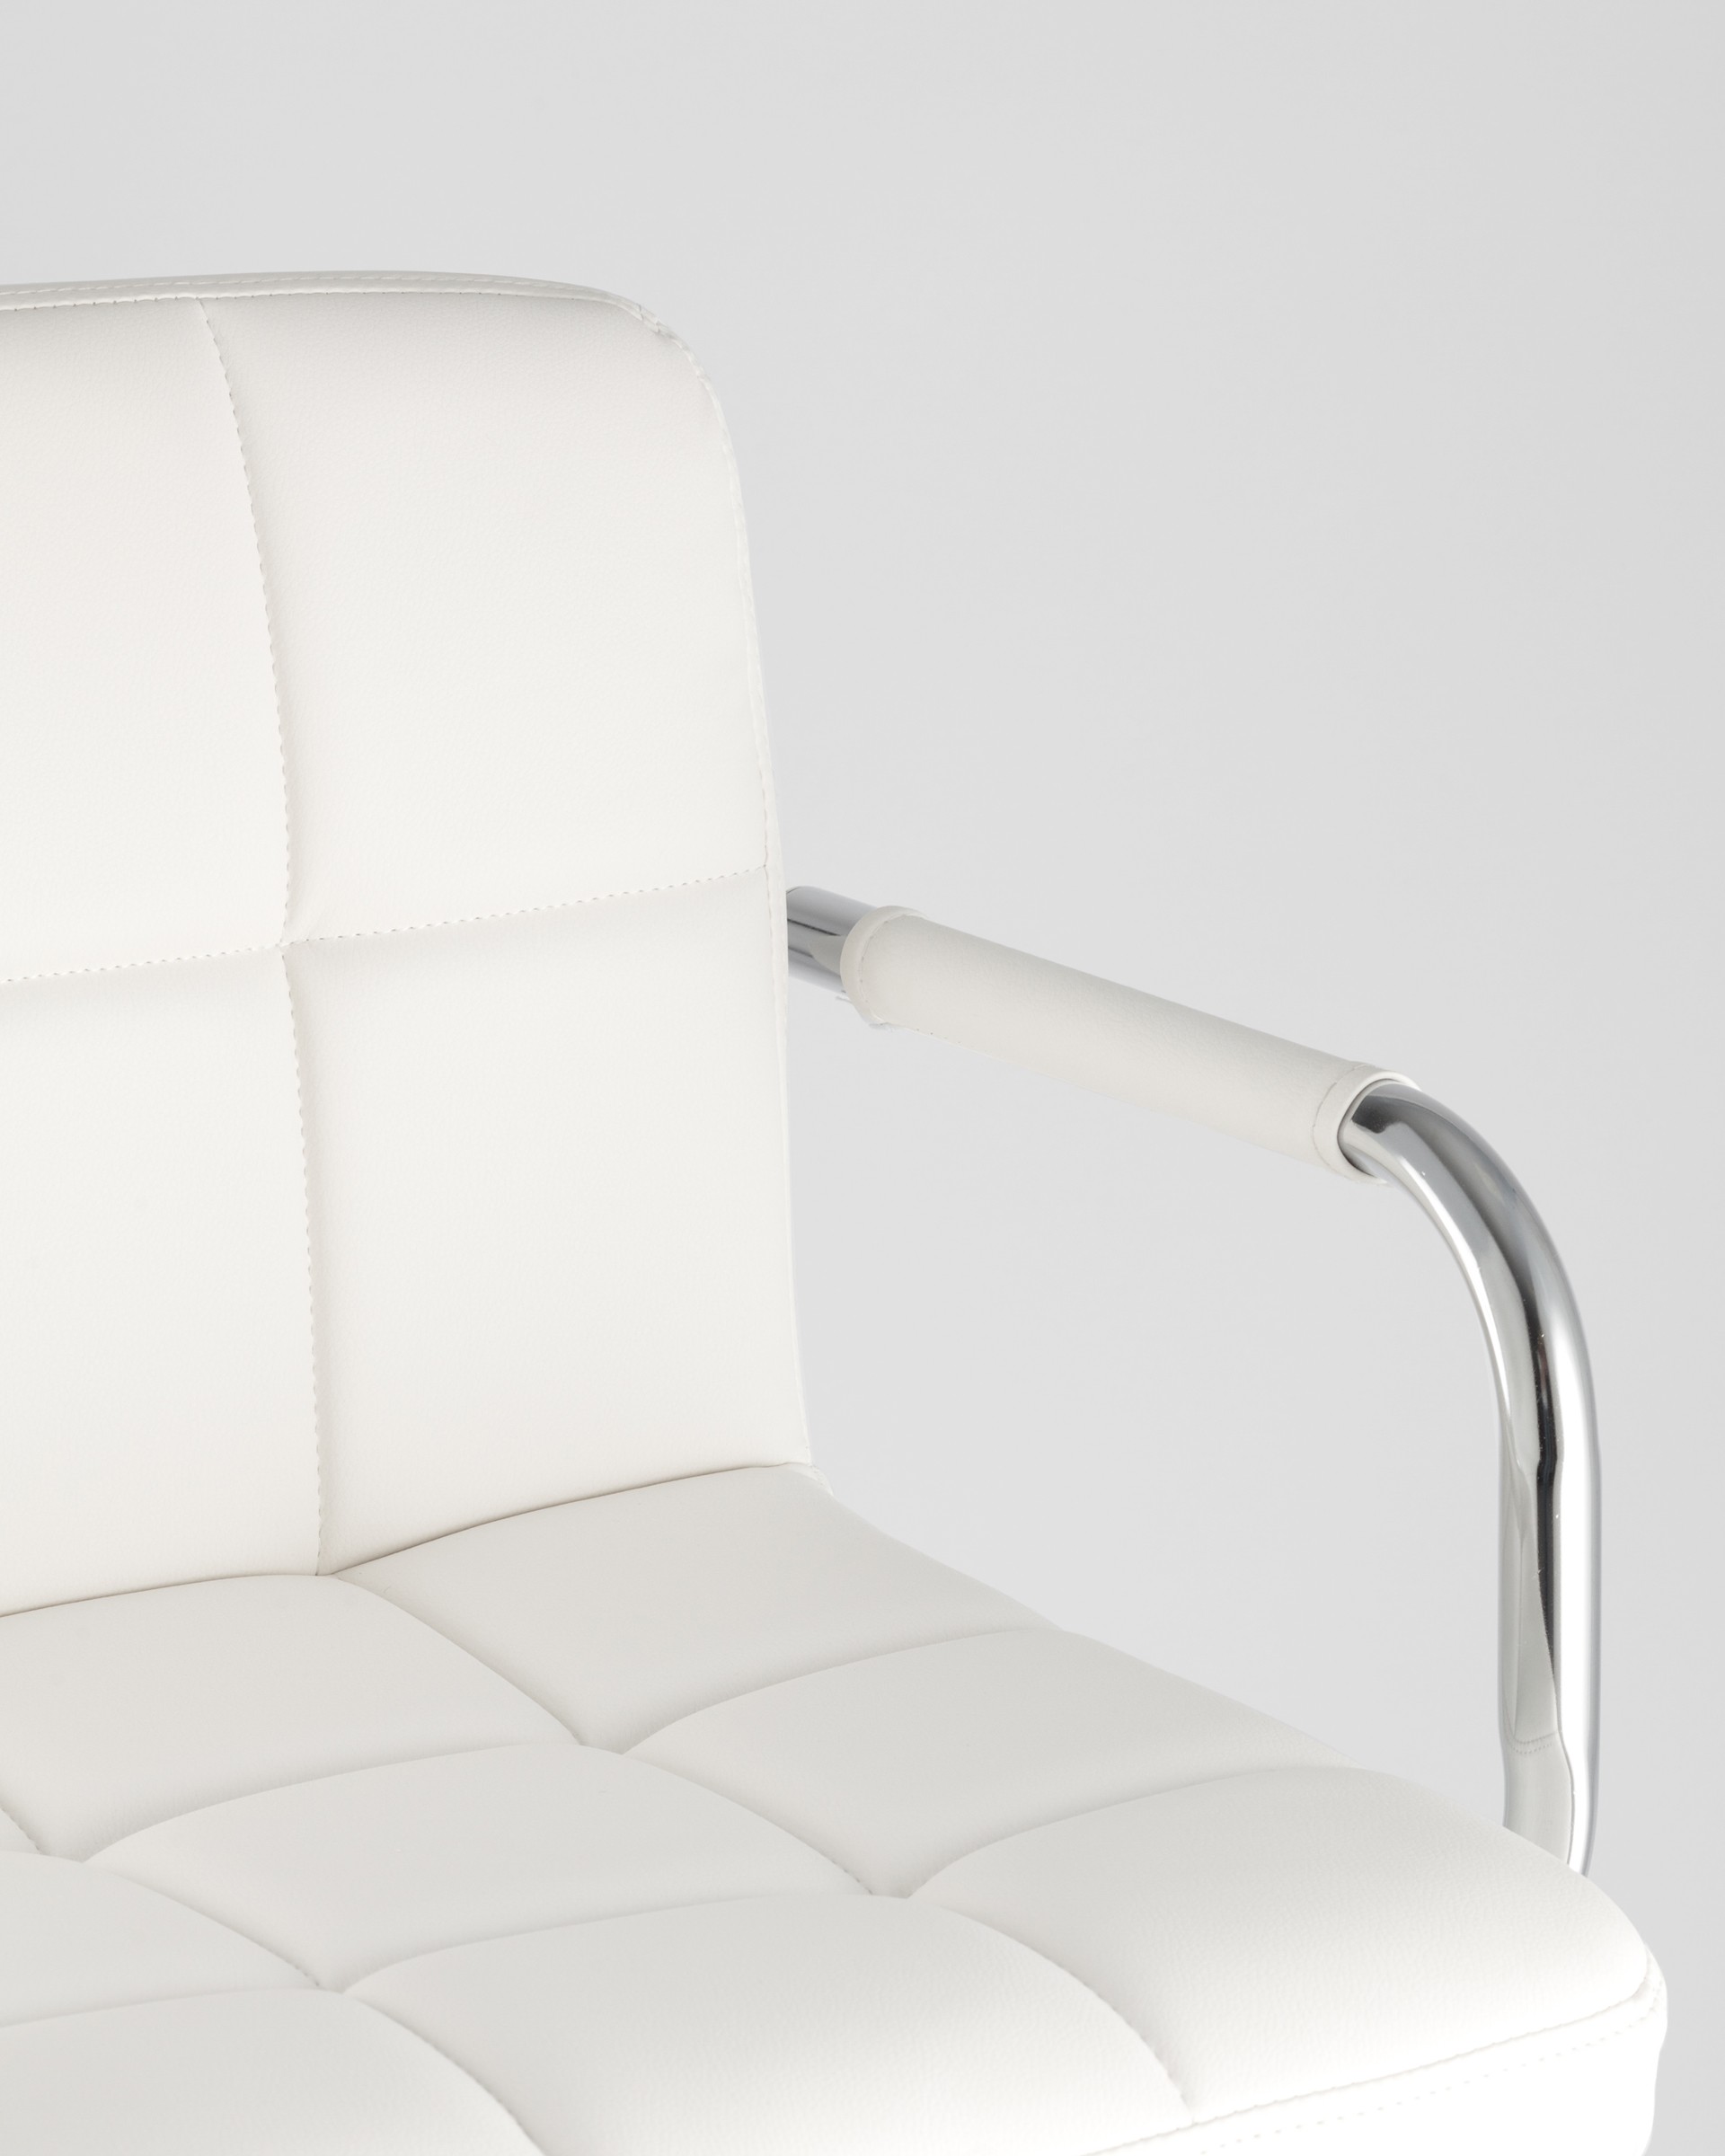 Барный стул Малави белый, газ-лифт, обивка из искусственной кожи